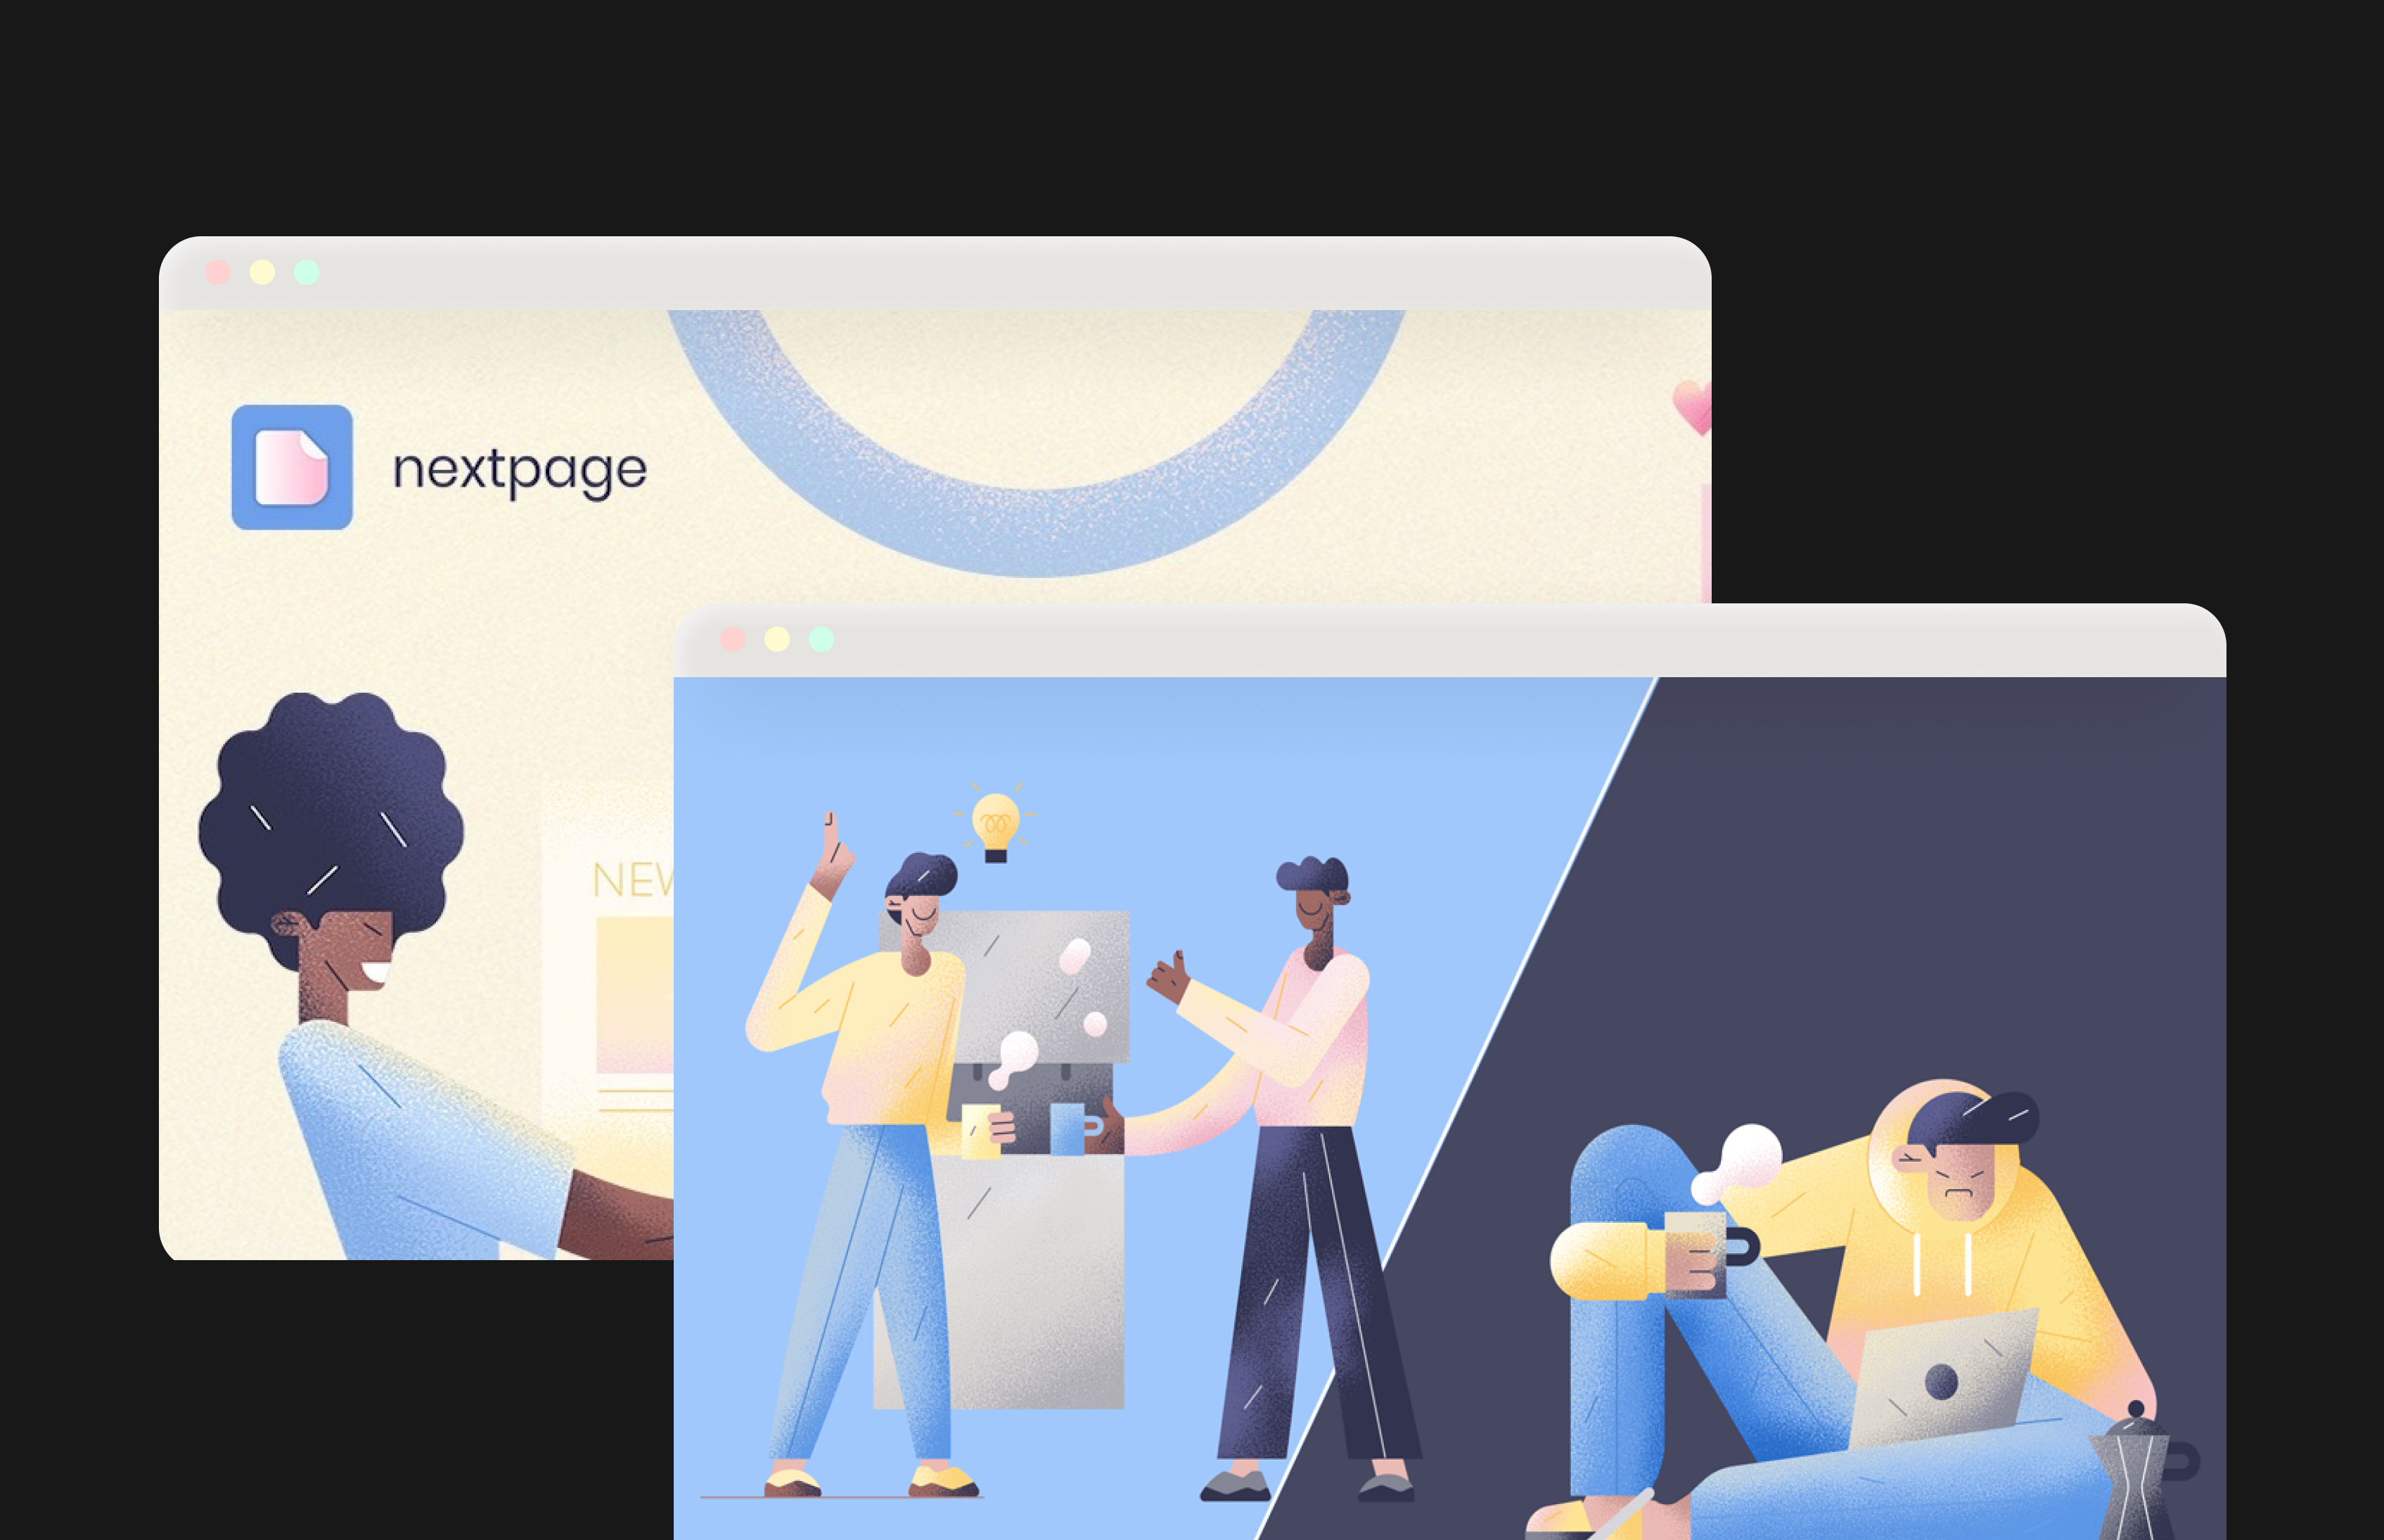 Tinder для коллег: расширение NextPage поможет найти общий язык в команде